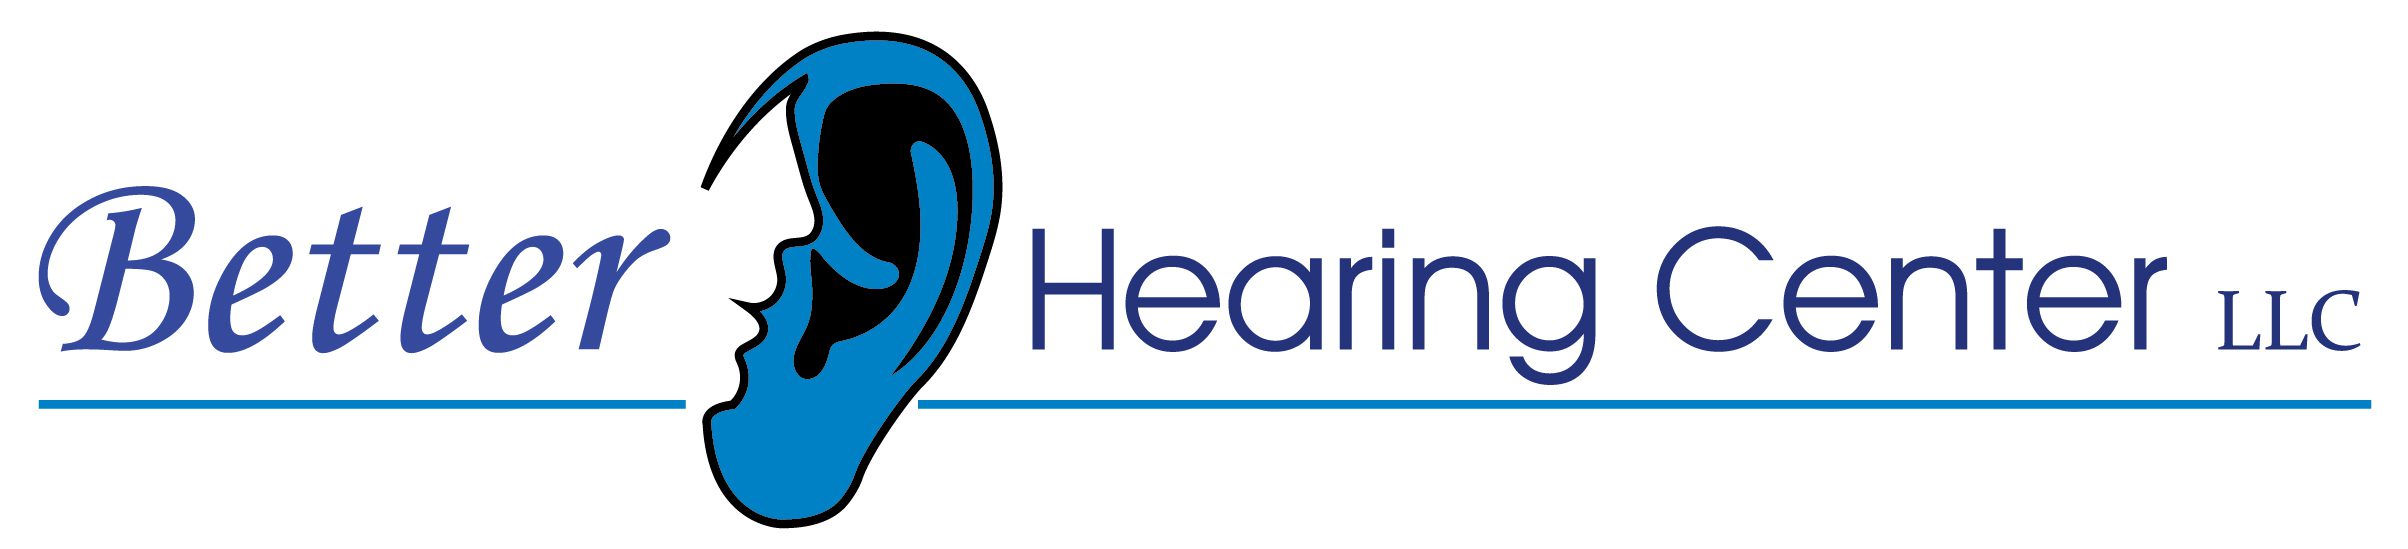 Better Hearing Center, LLC.